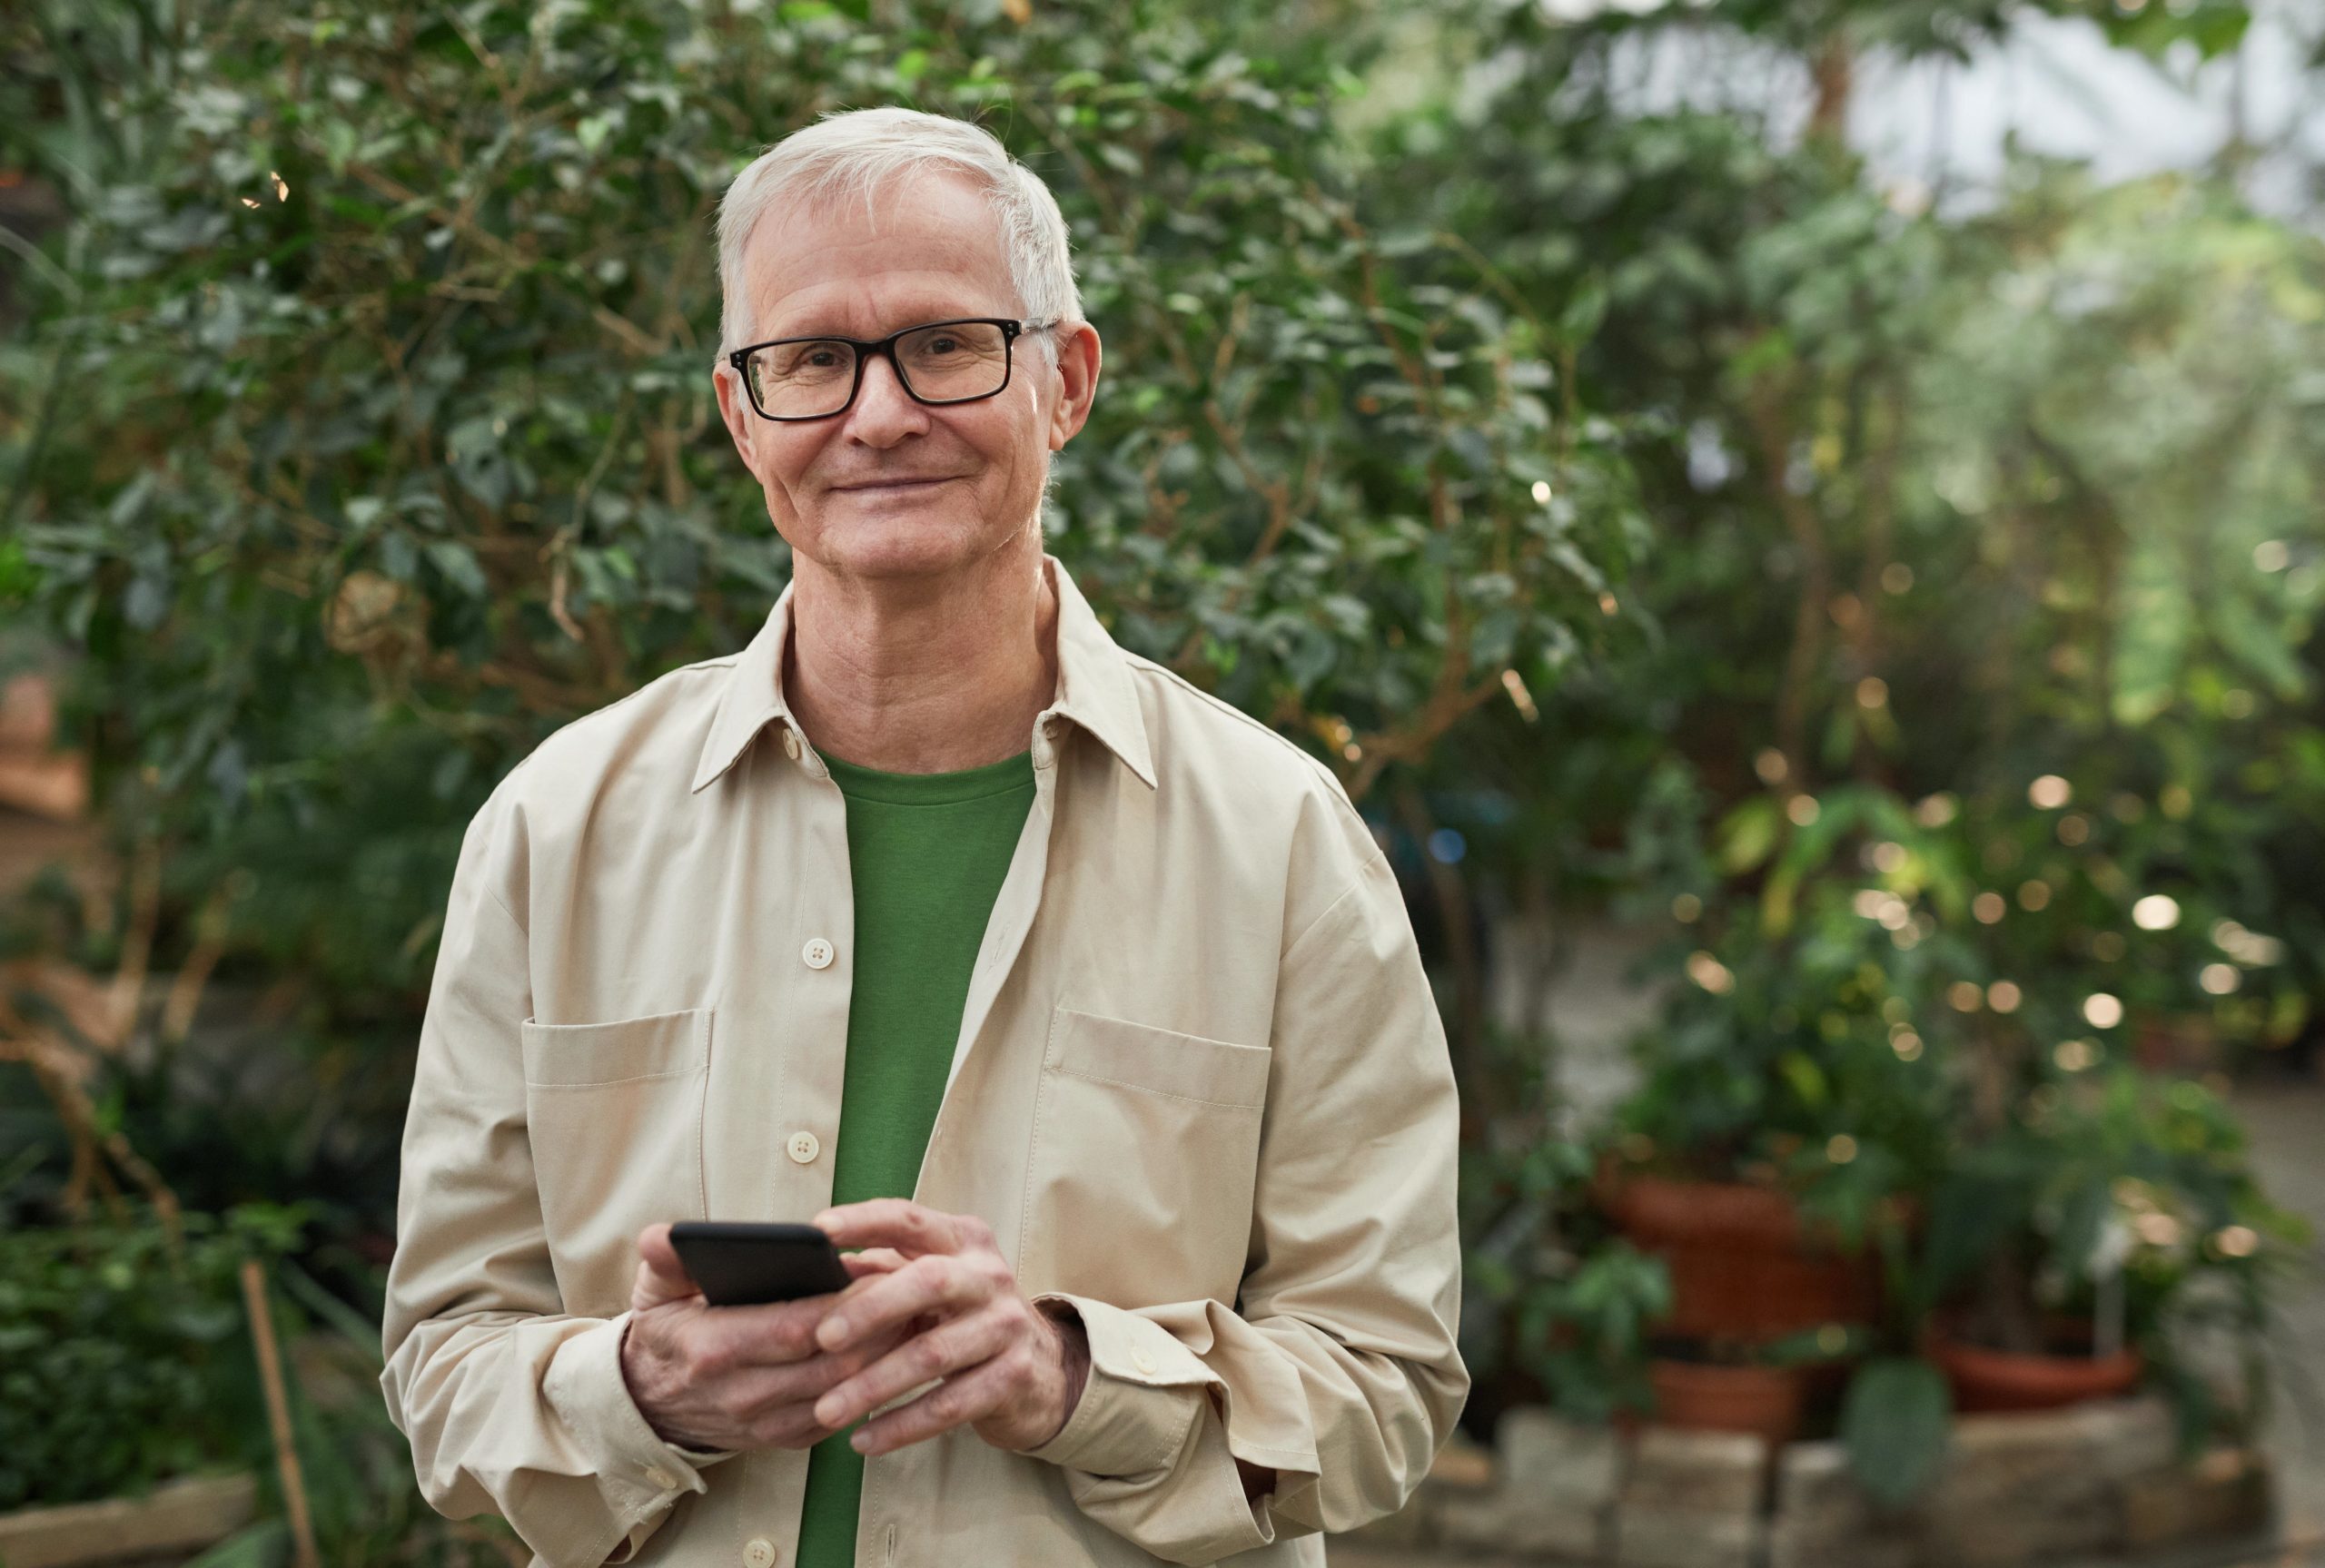 Mann med grått hår og briller står foran en hekk med mobil i hendene, smiler mot kamera.